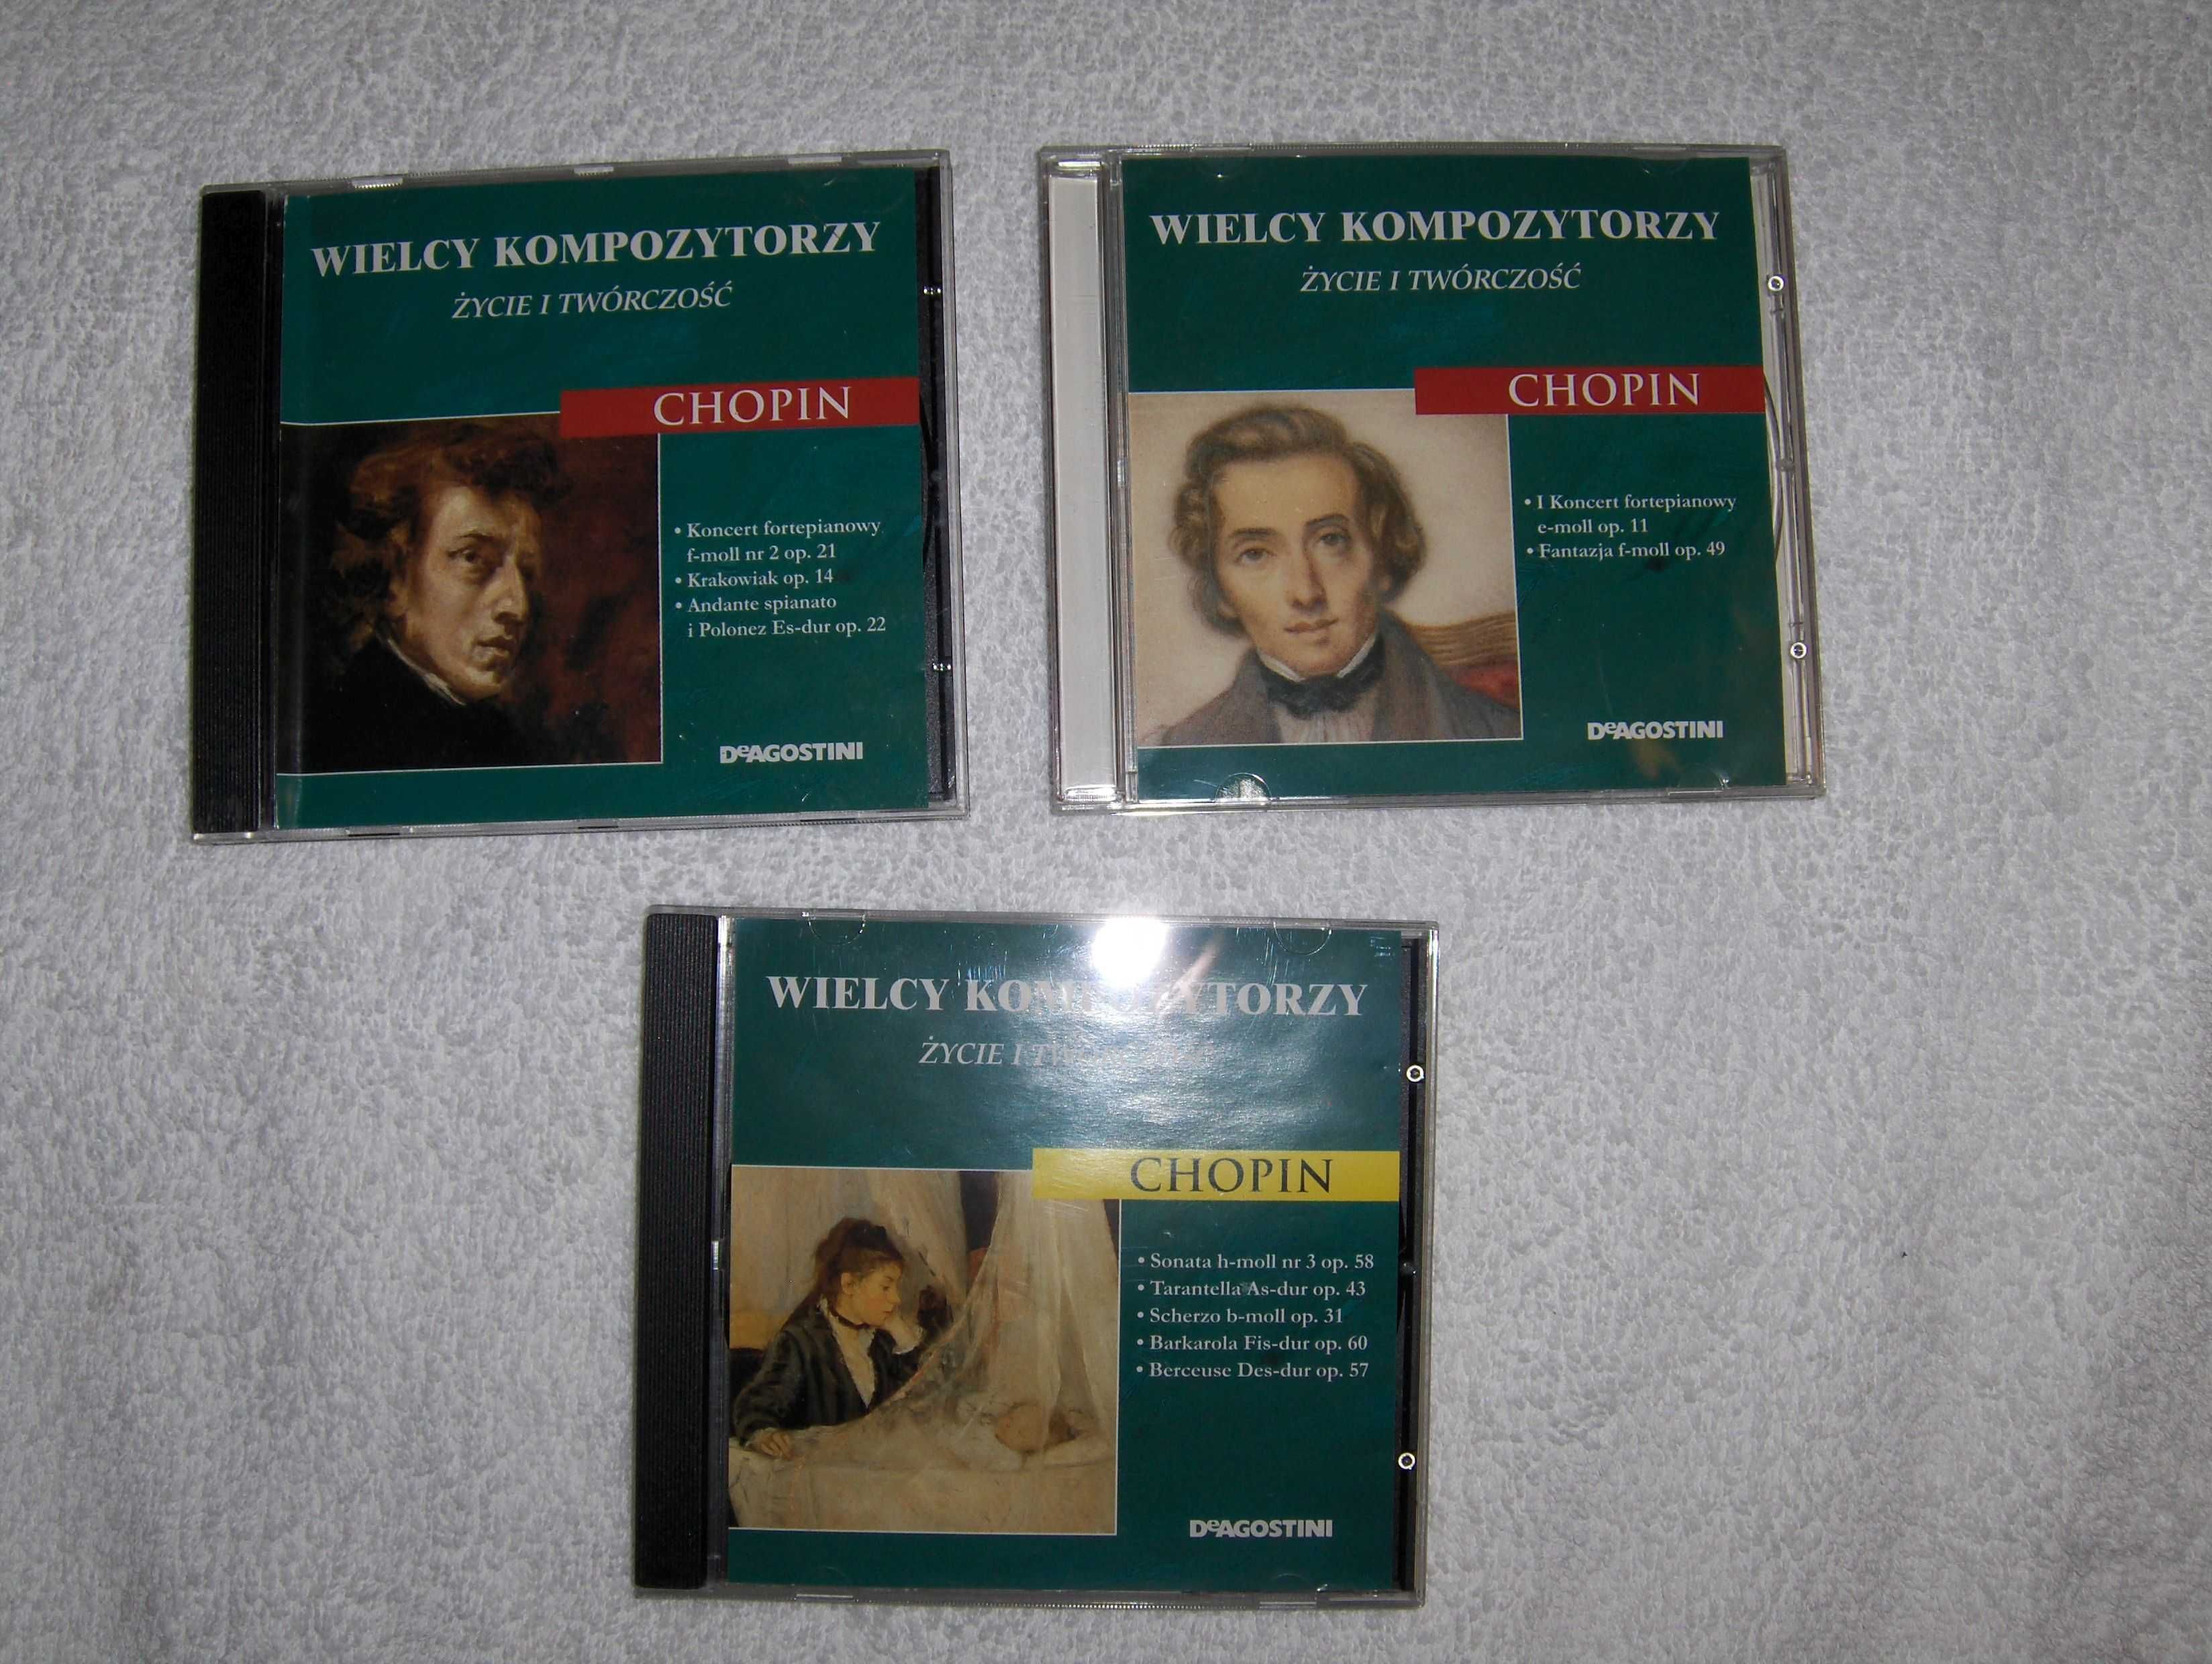 Wielcy kompozytorzy Chopin zestaw trzy płyty